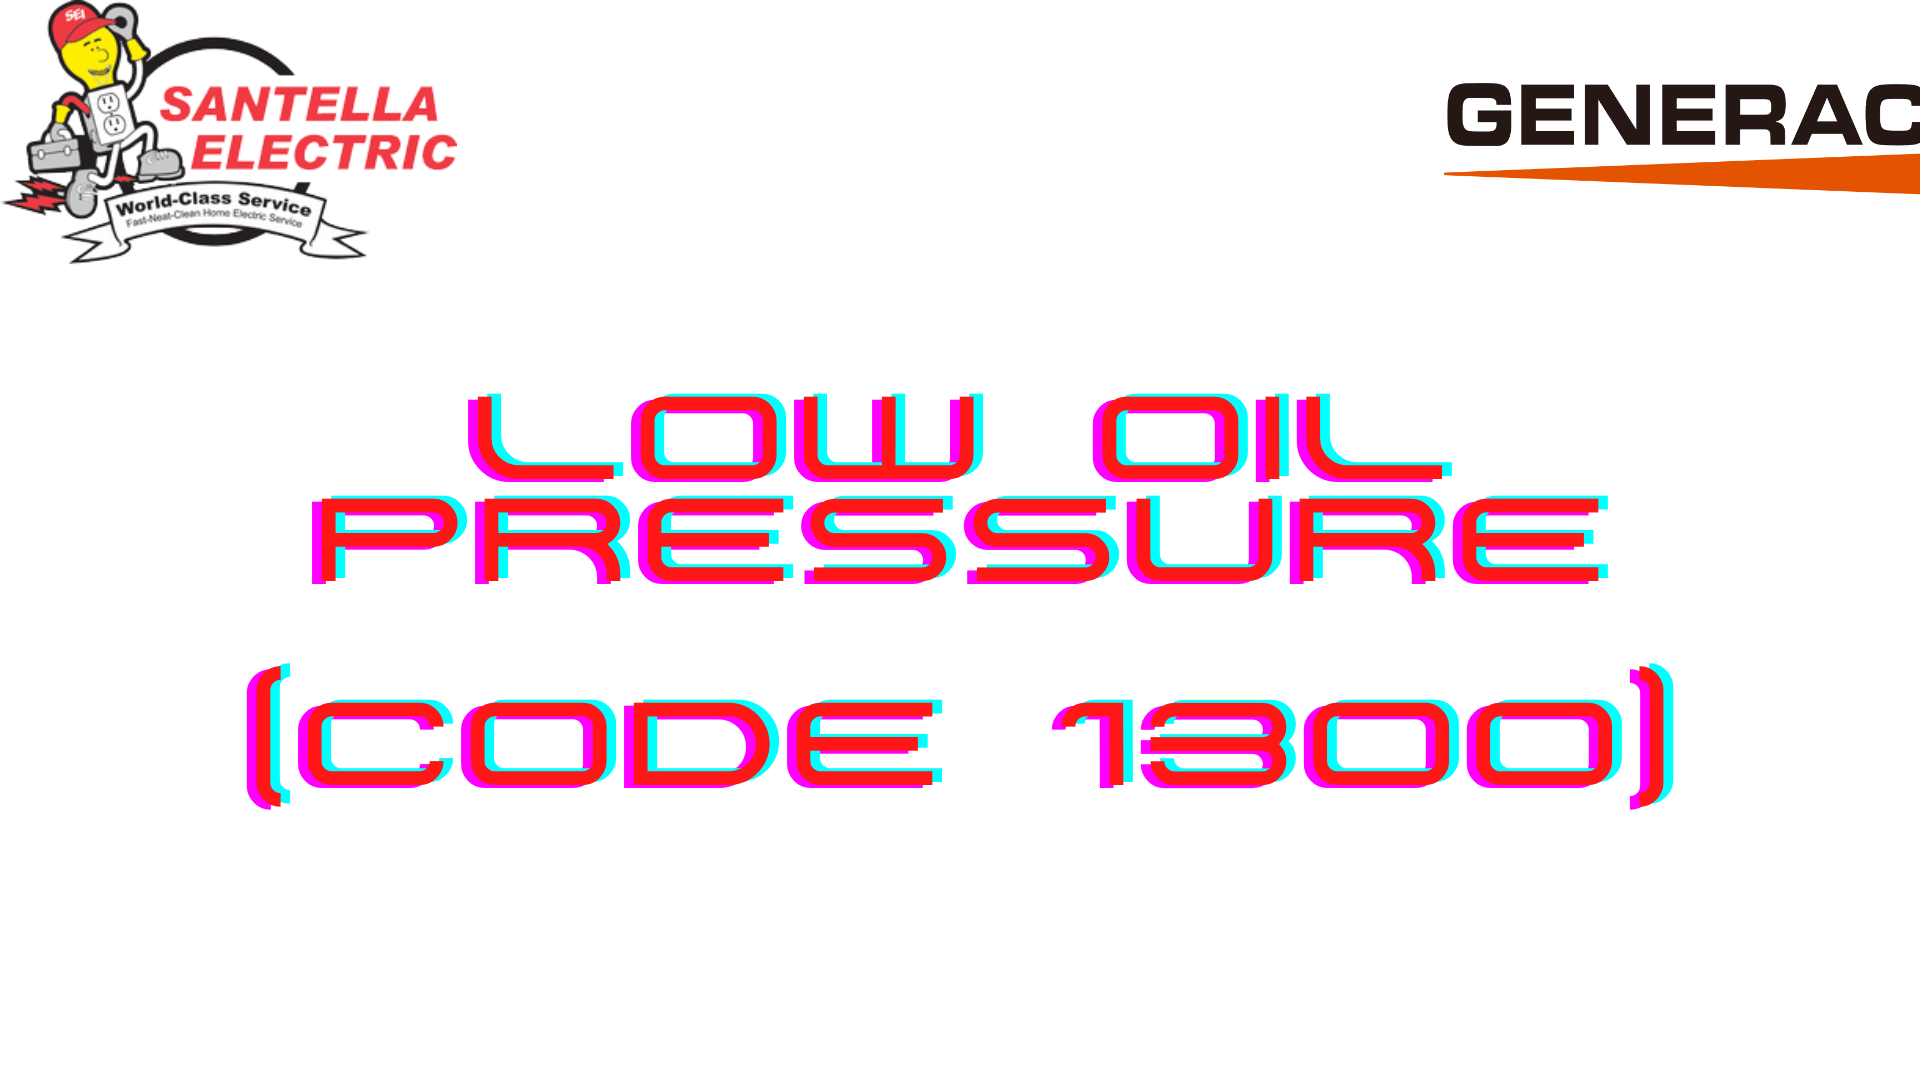 Generac Error Code - Low Oil Pressure (Code 1300)